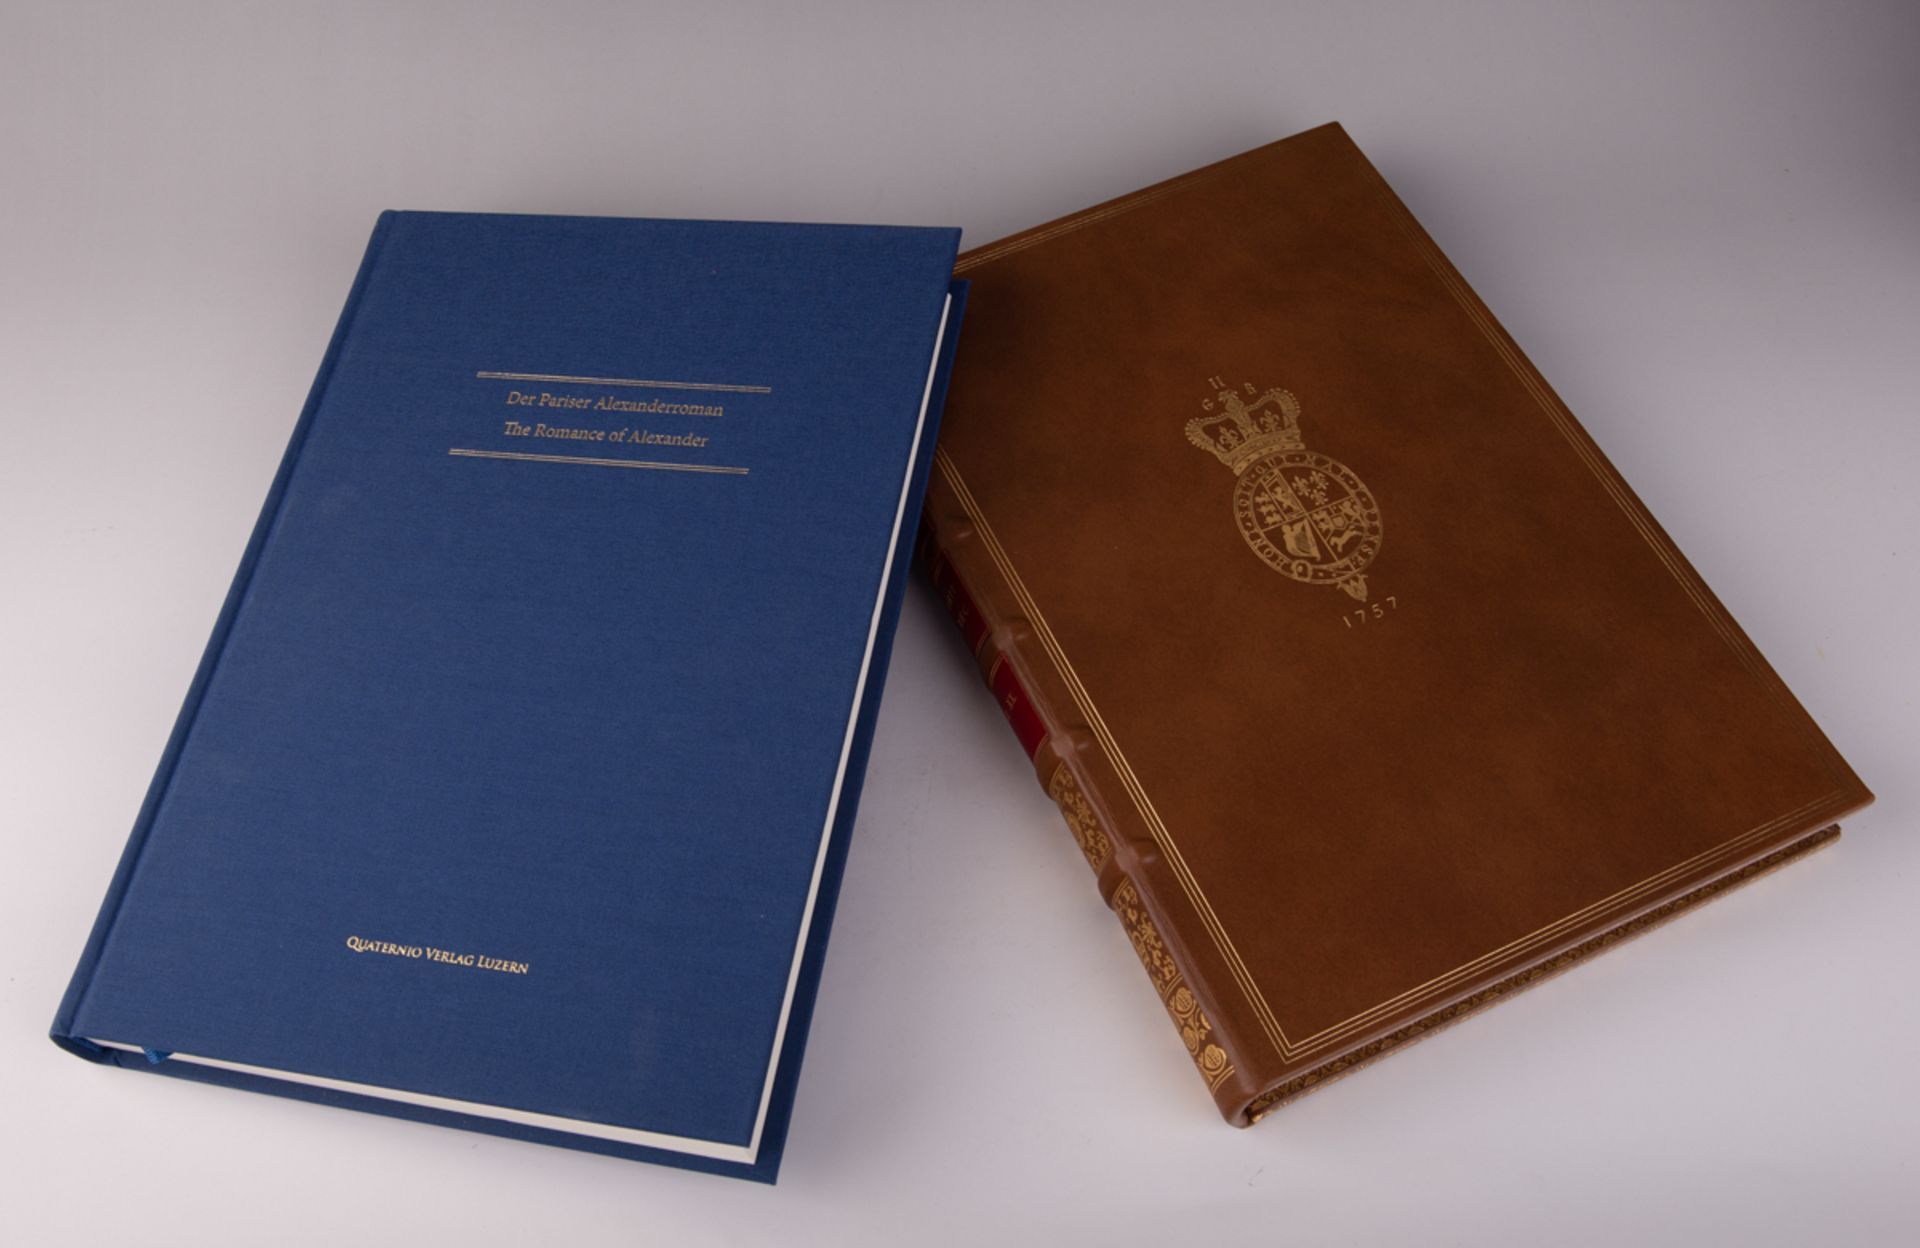 Faksimile-Edition des 'Pariser Alexanderromans' aus der British Library London - Bild 2 aus 4